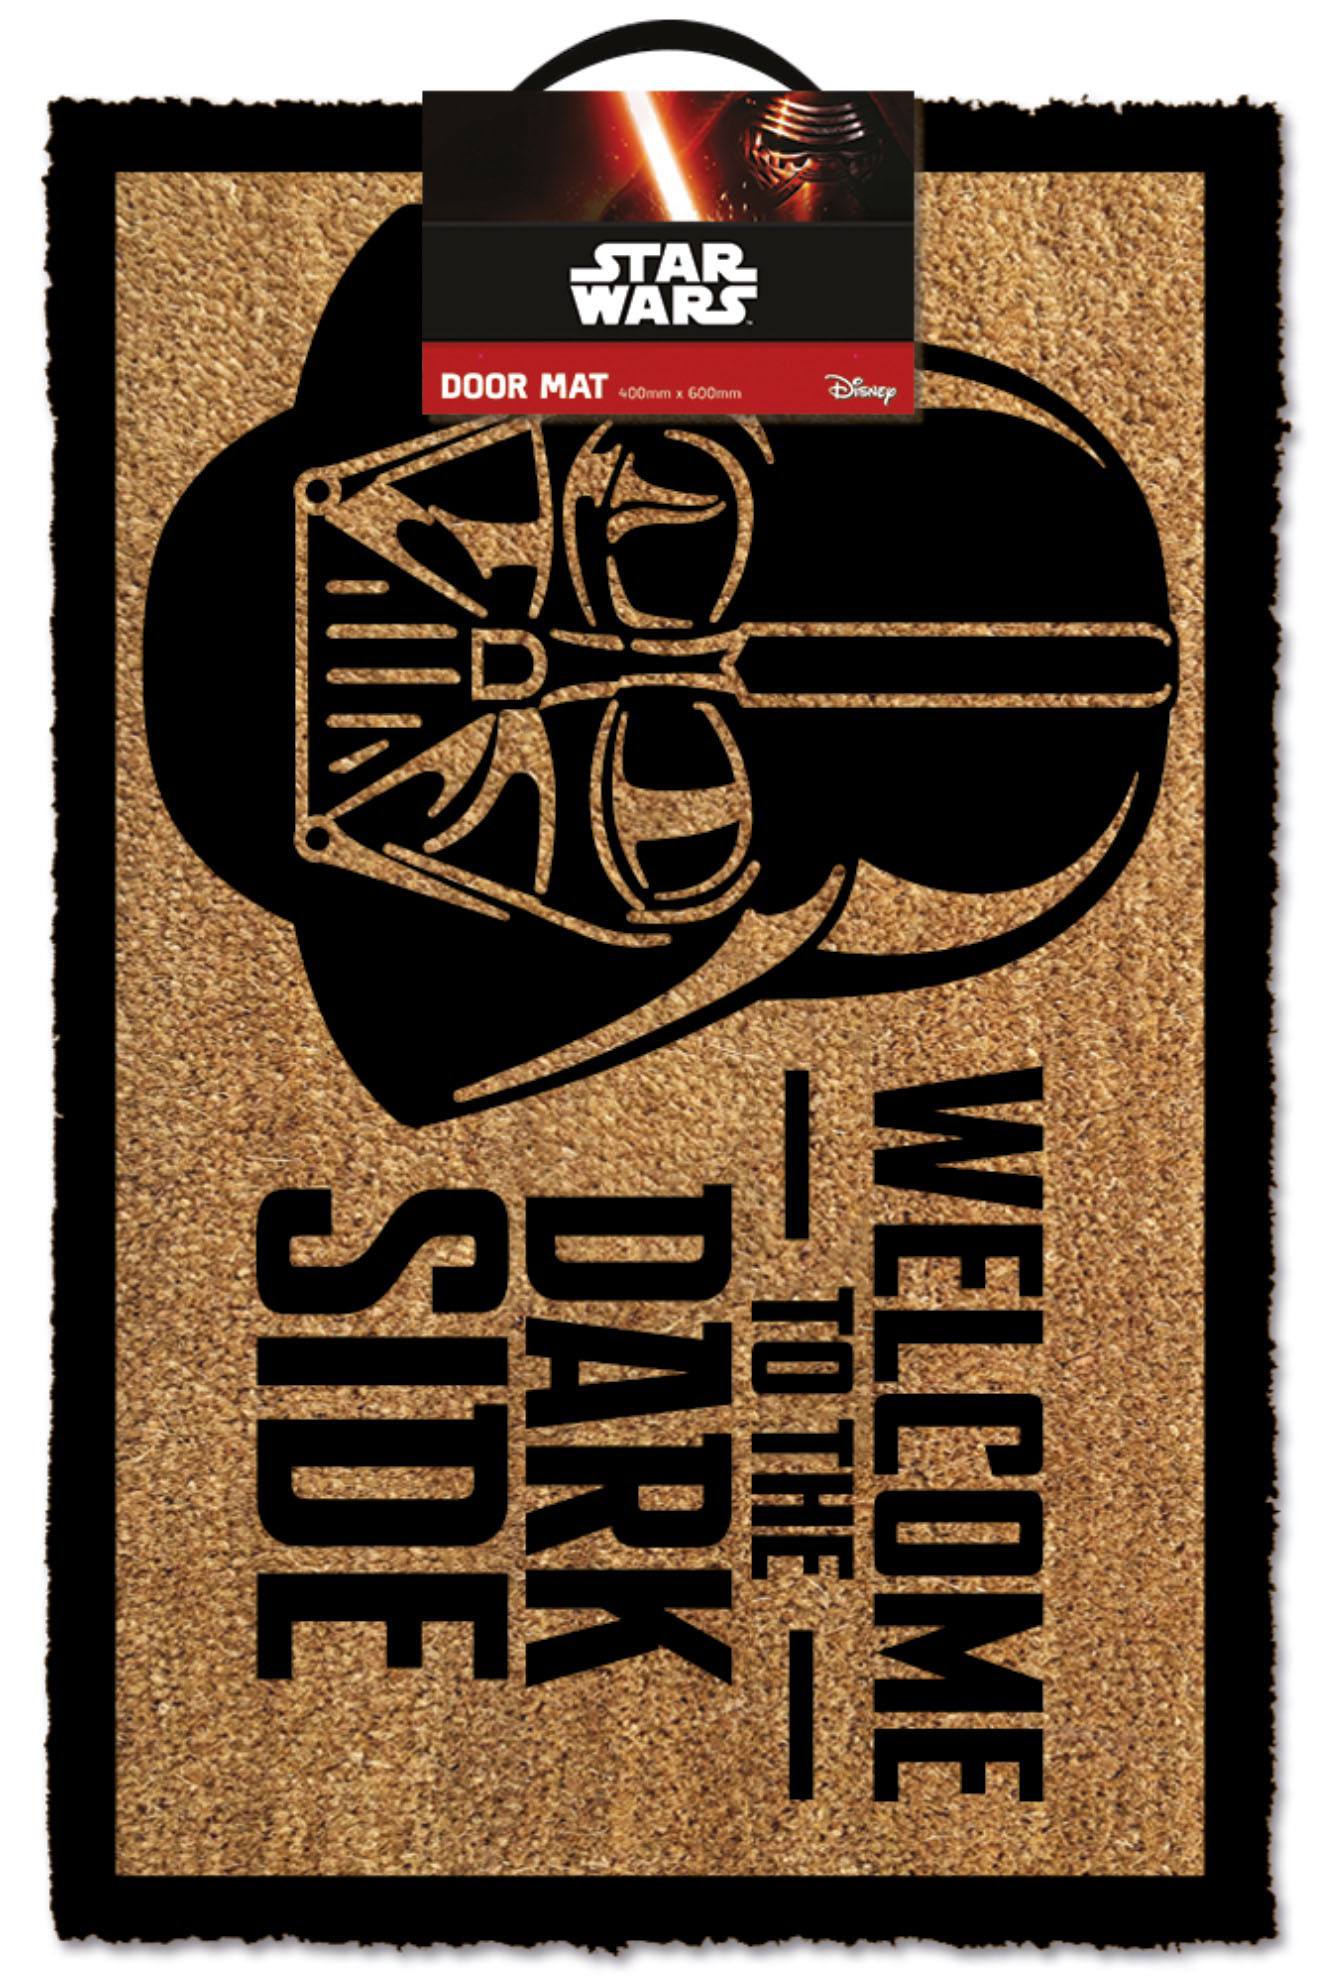 Star Wars Doormat Welcome To The Dark Side 40 x 60 cm 5050293850337